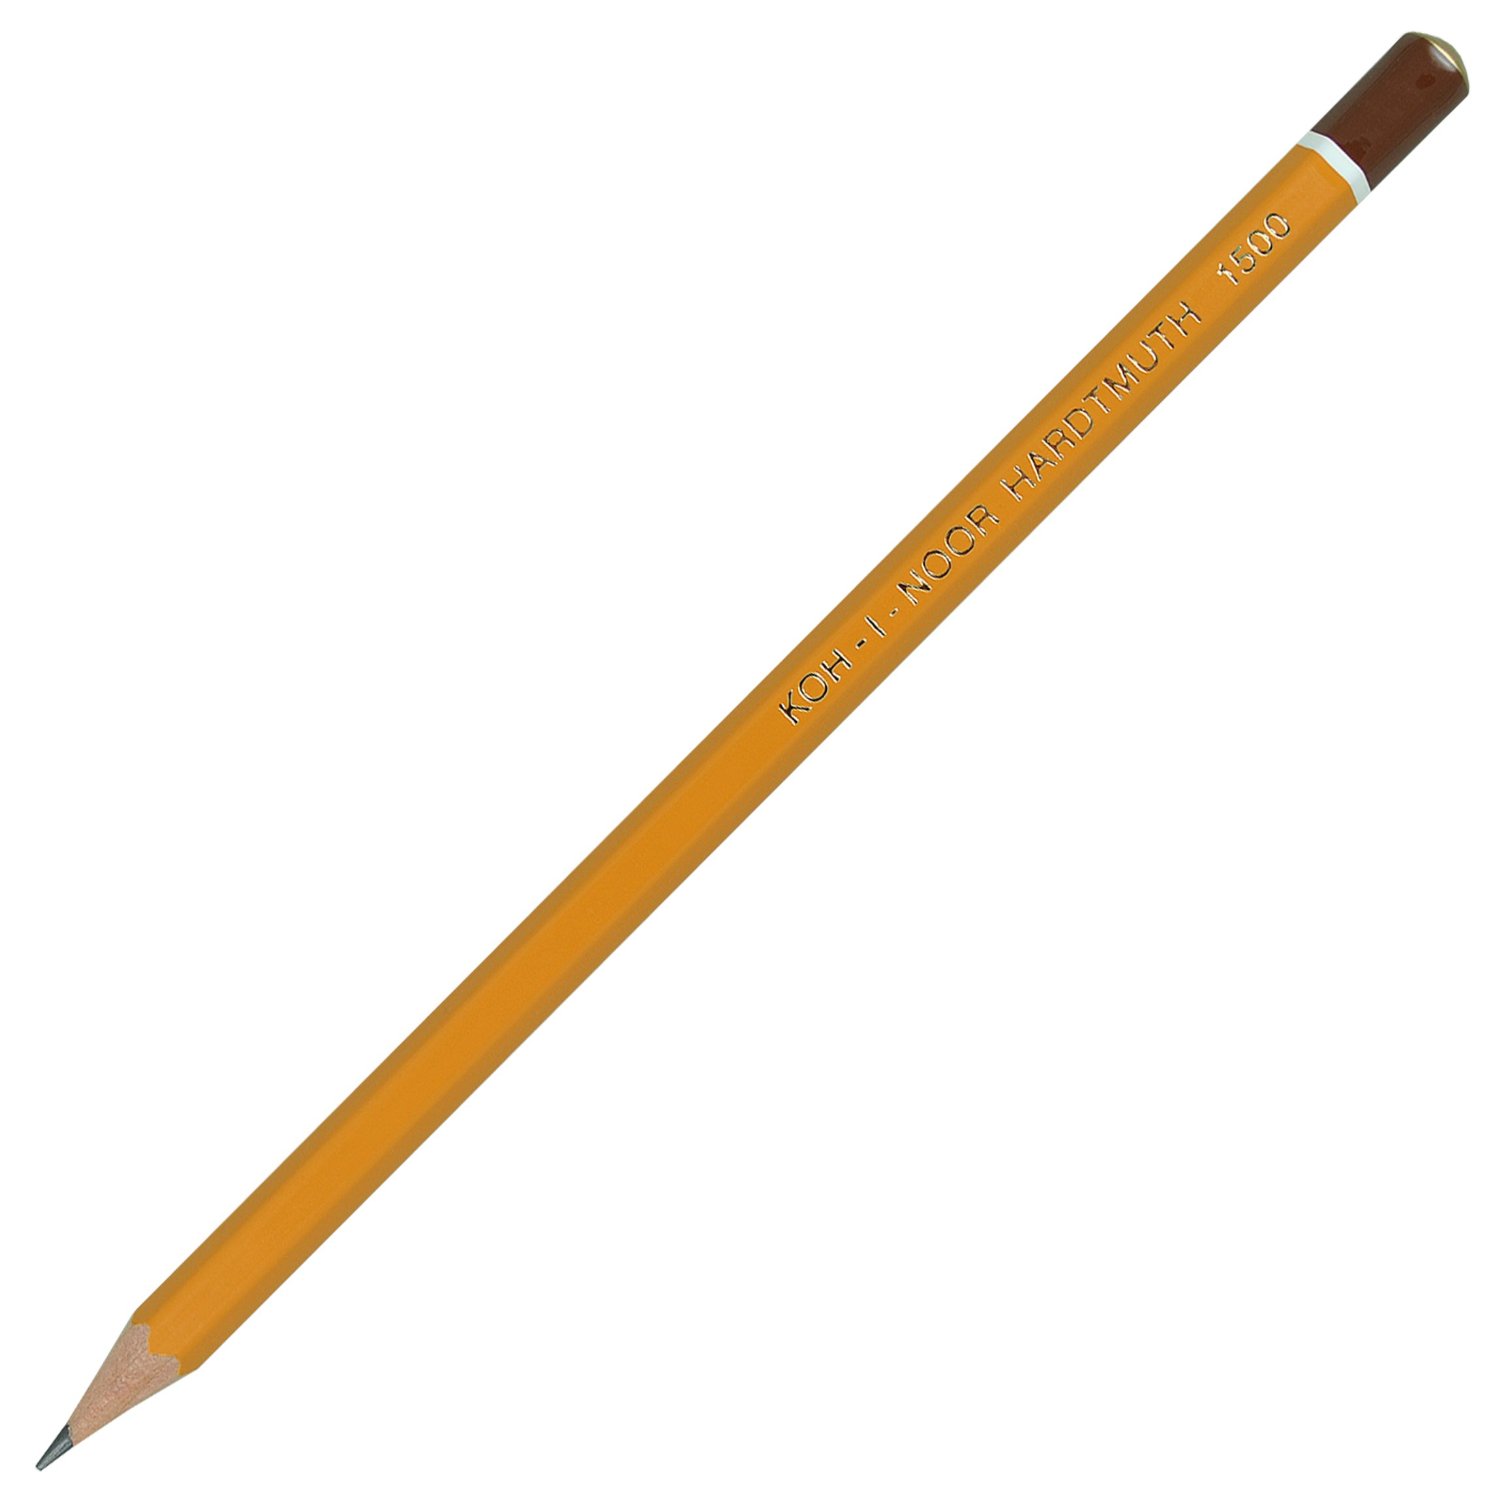 Олівець Koh-I-Noor графітний‚ 7Н, загострений, ціна за 1 олівець, упаковка 12 штук 1500.7H